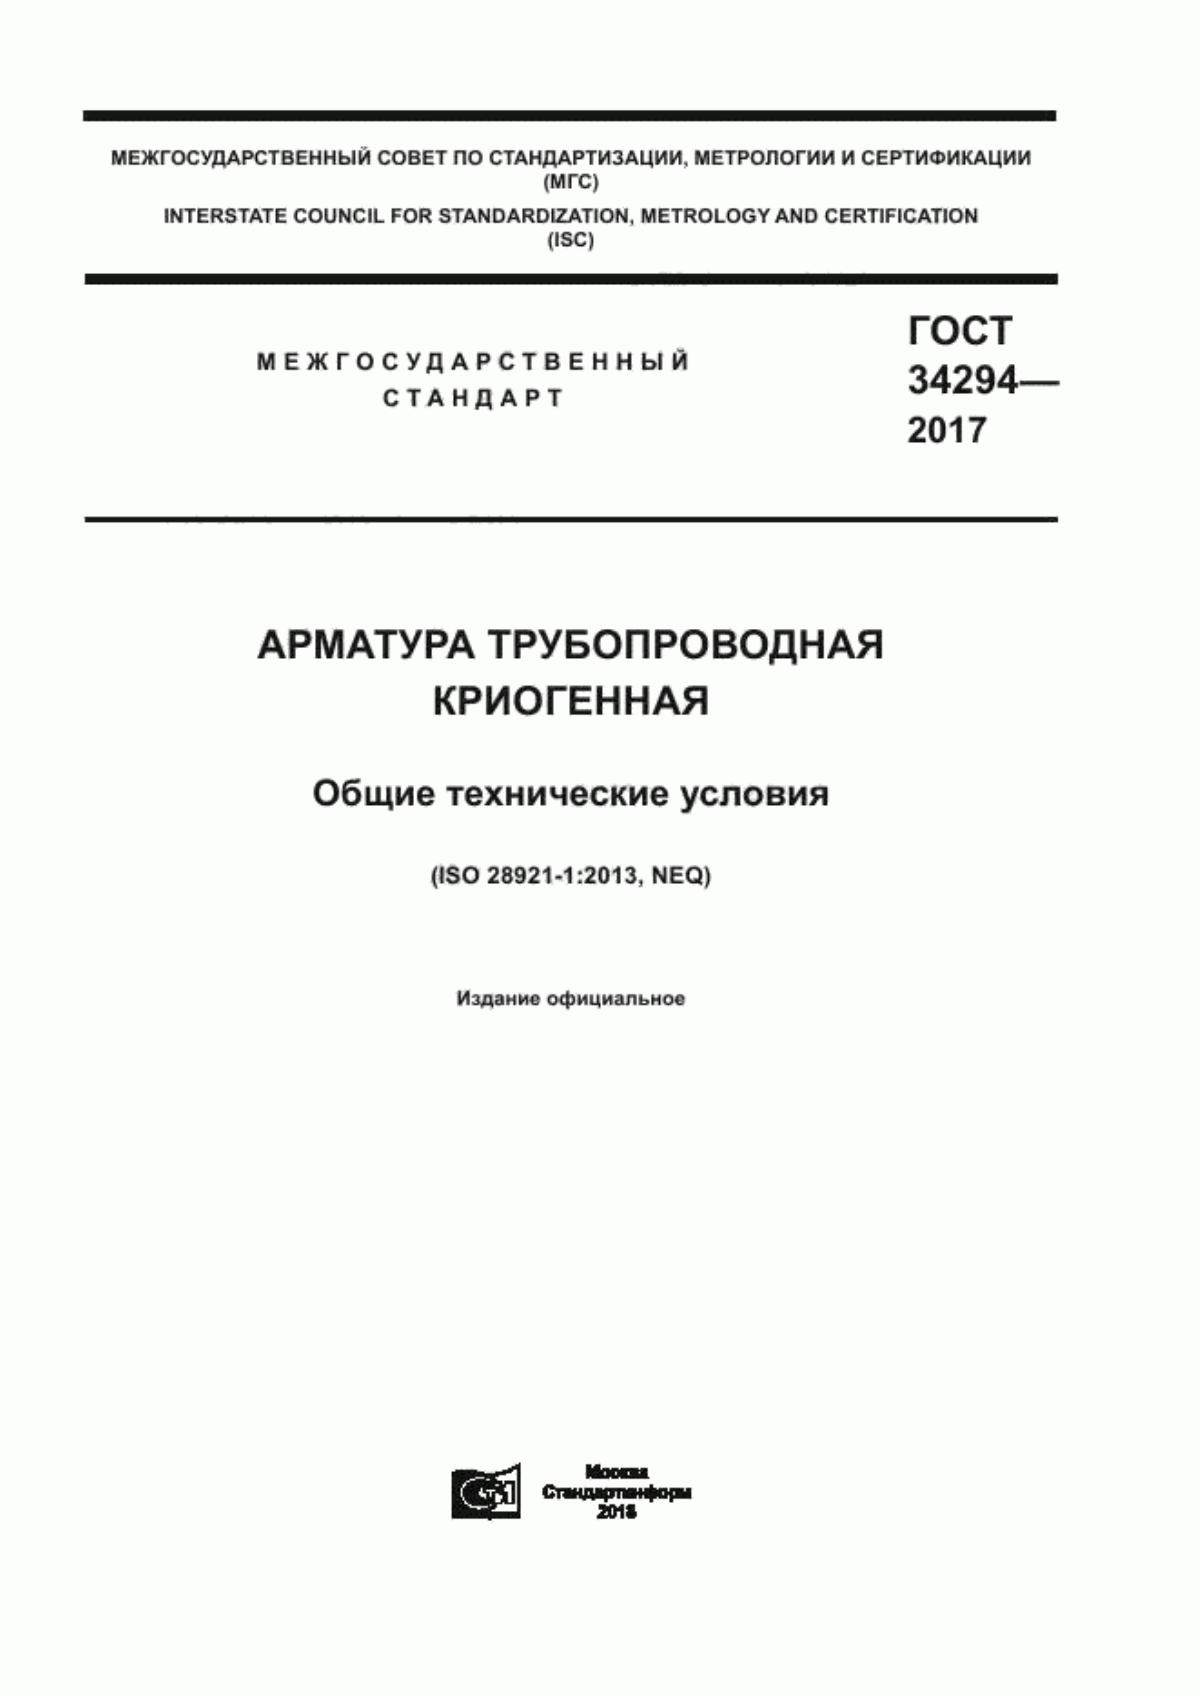 ГОСТ 34294-2017 Арматура трубопроводная криогенная. Общие технические условия